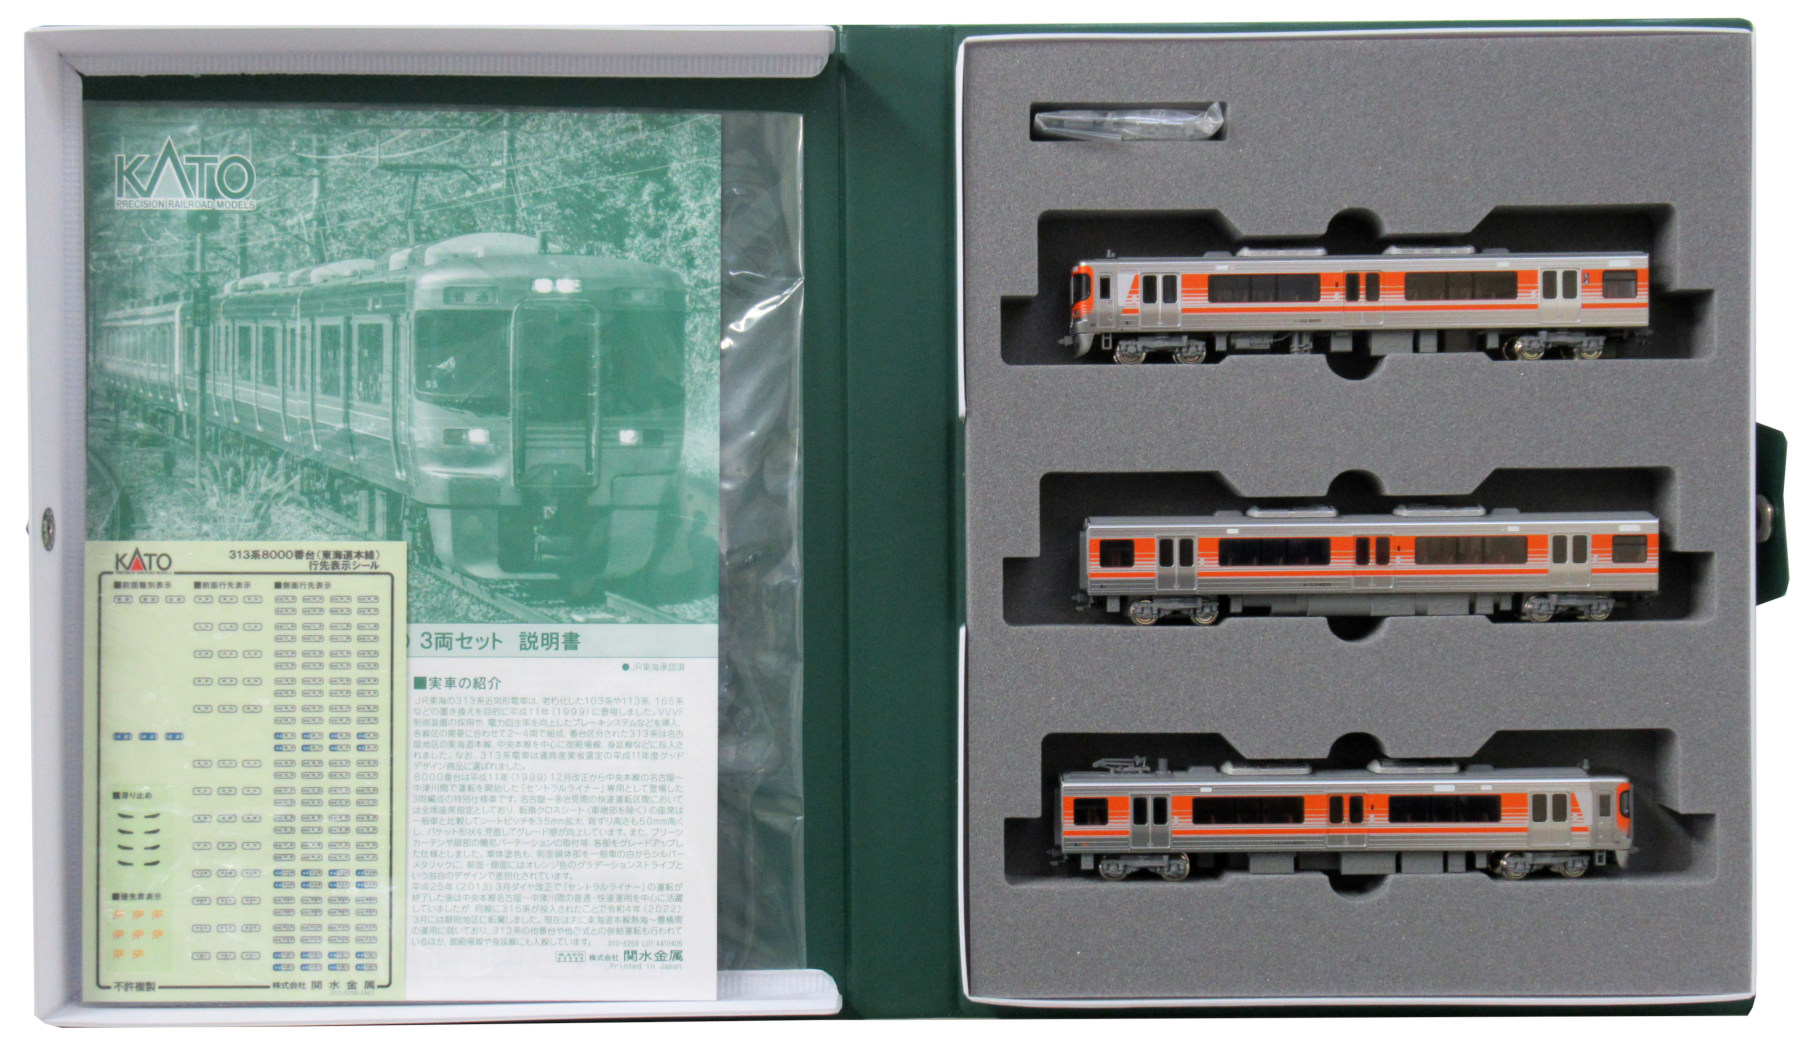 公式]鉄道模型(JR・国鉄 形式別(N)、近郊形車両、313系)カテゴリ 